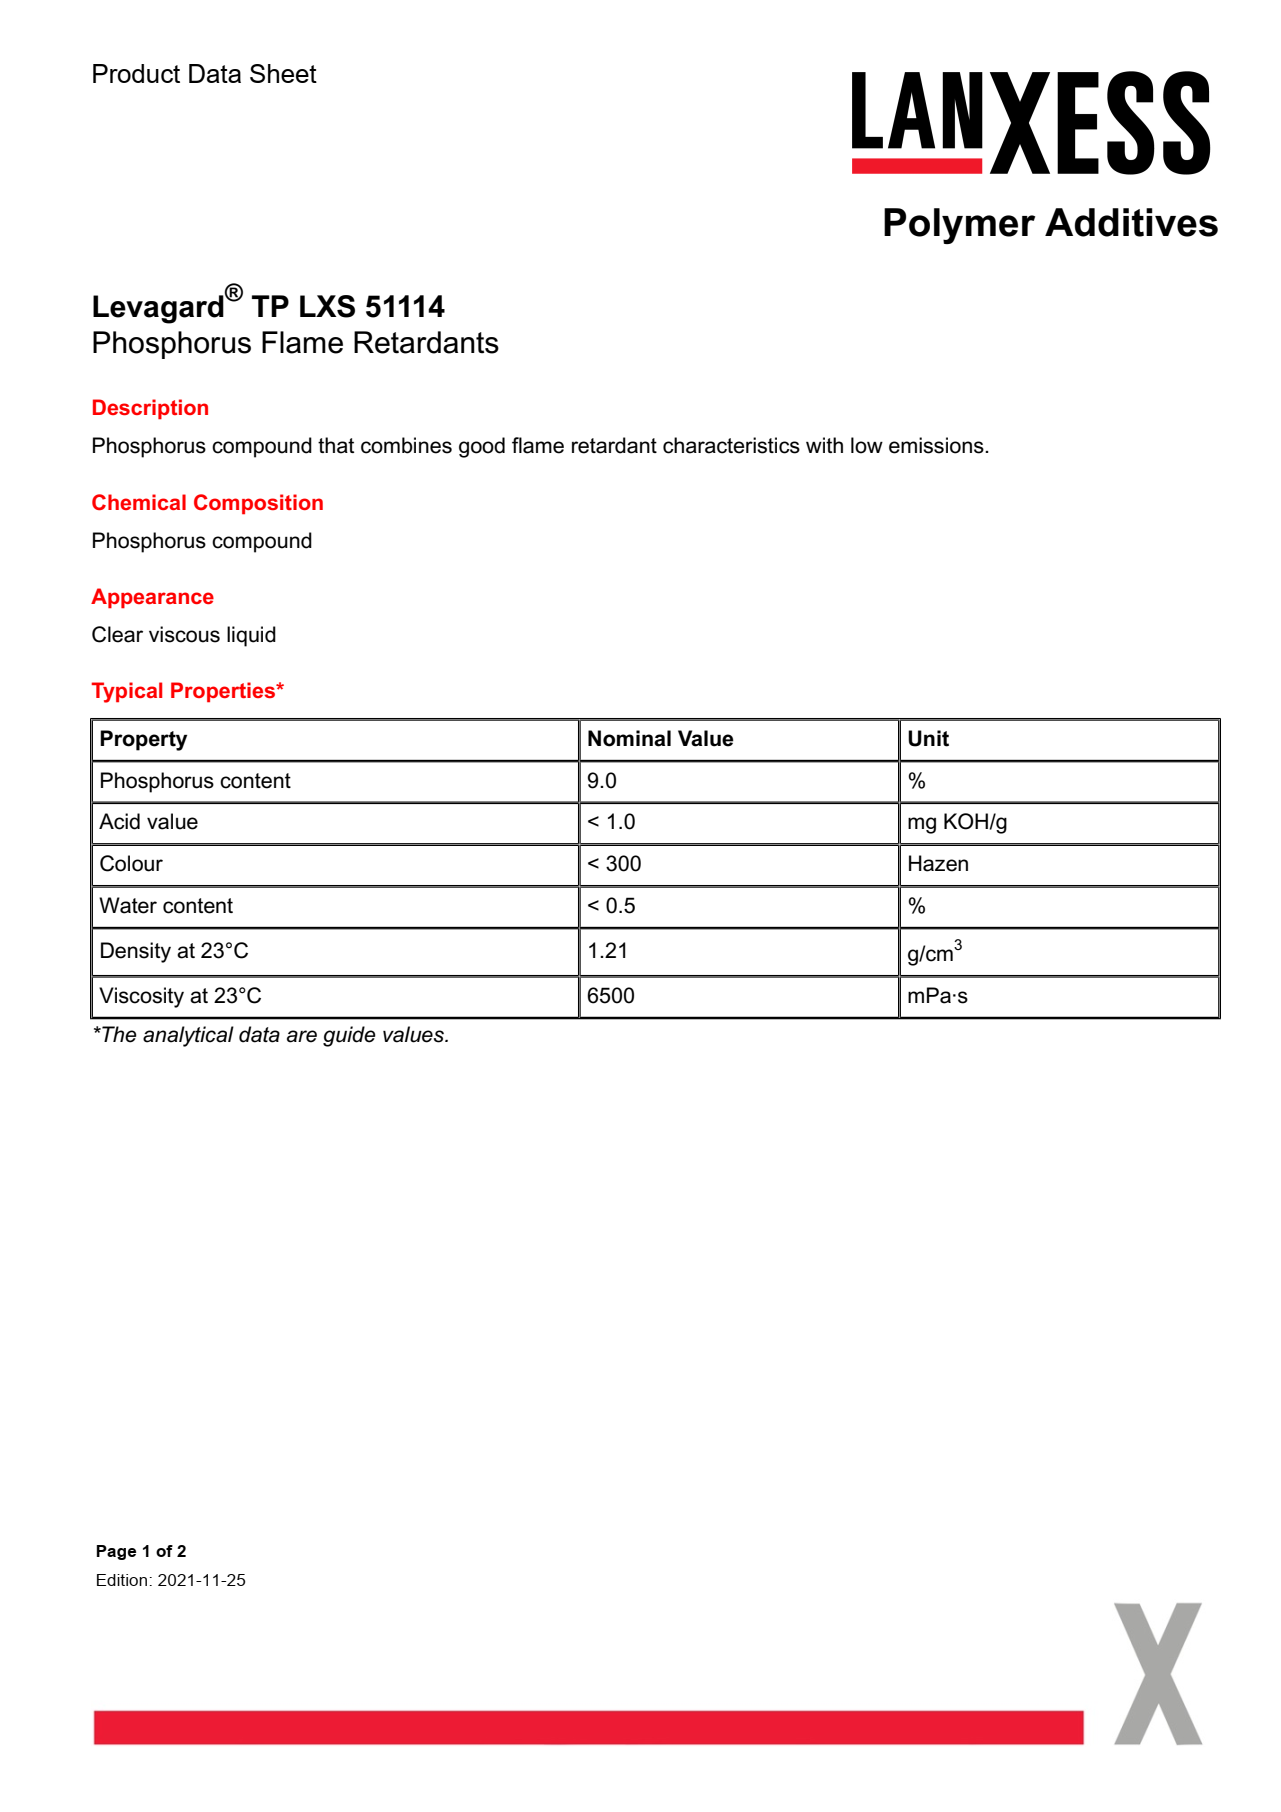 Levagard TP LXS 51114